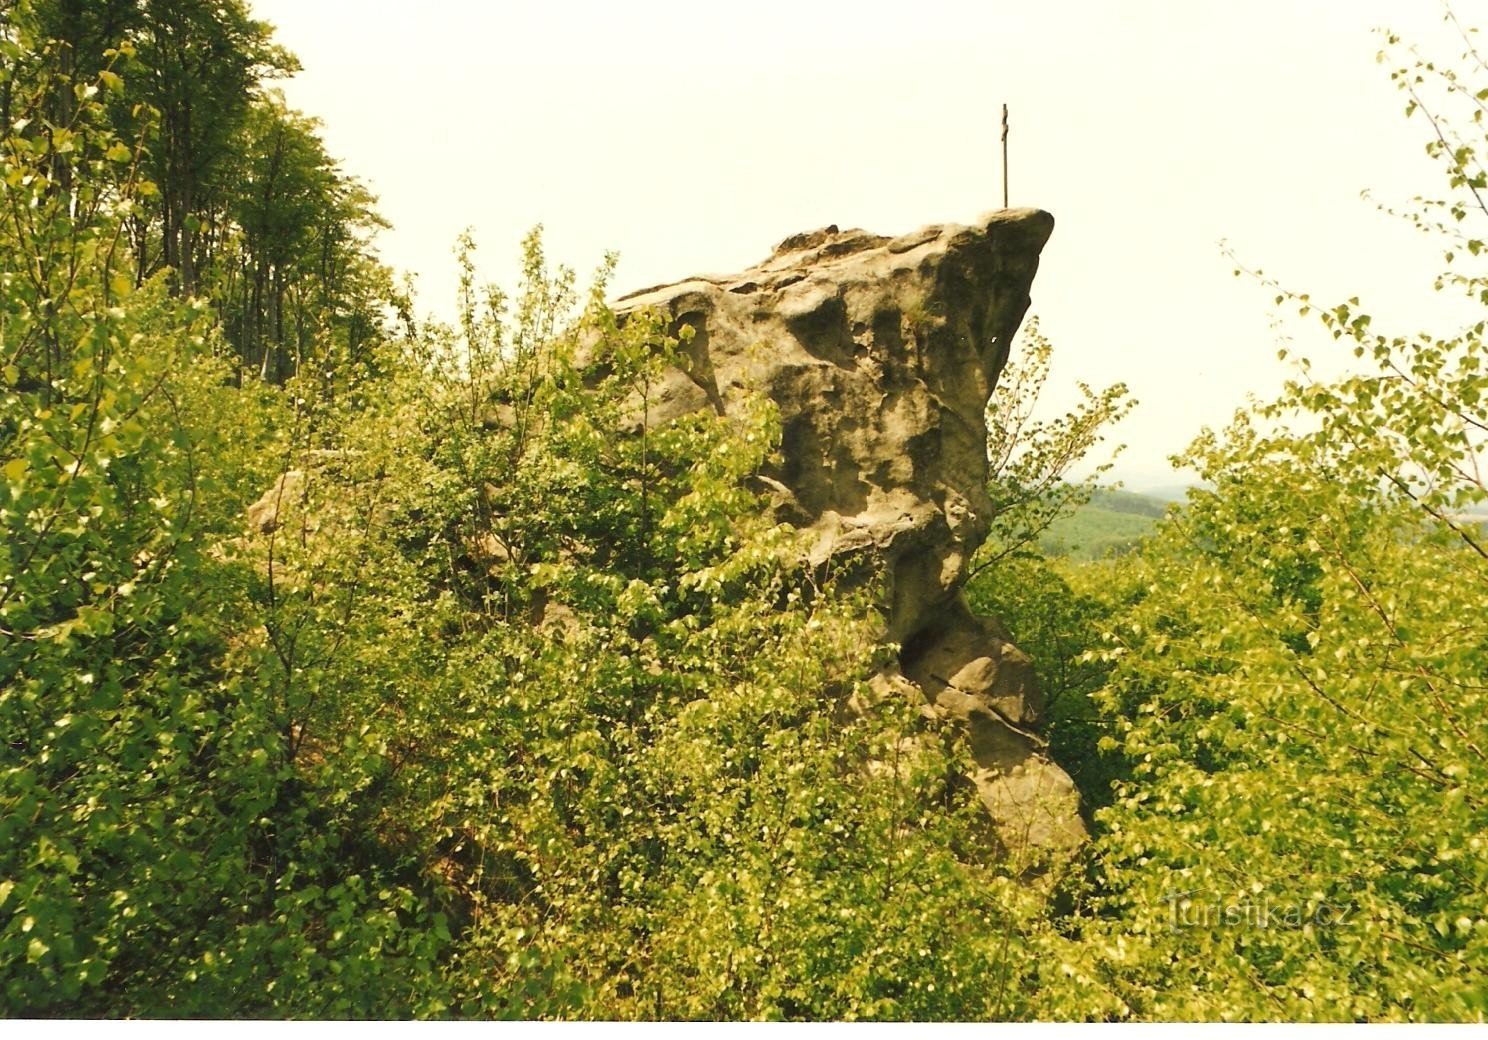 Prædikestolen - den øverste del af klippen med korset i 1998